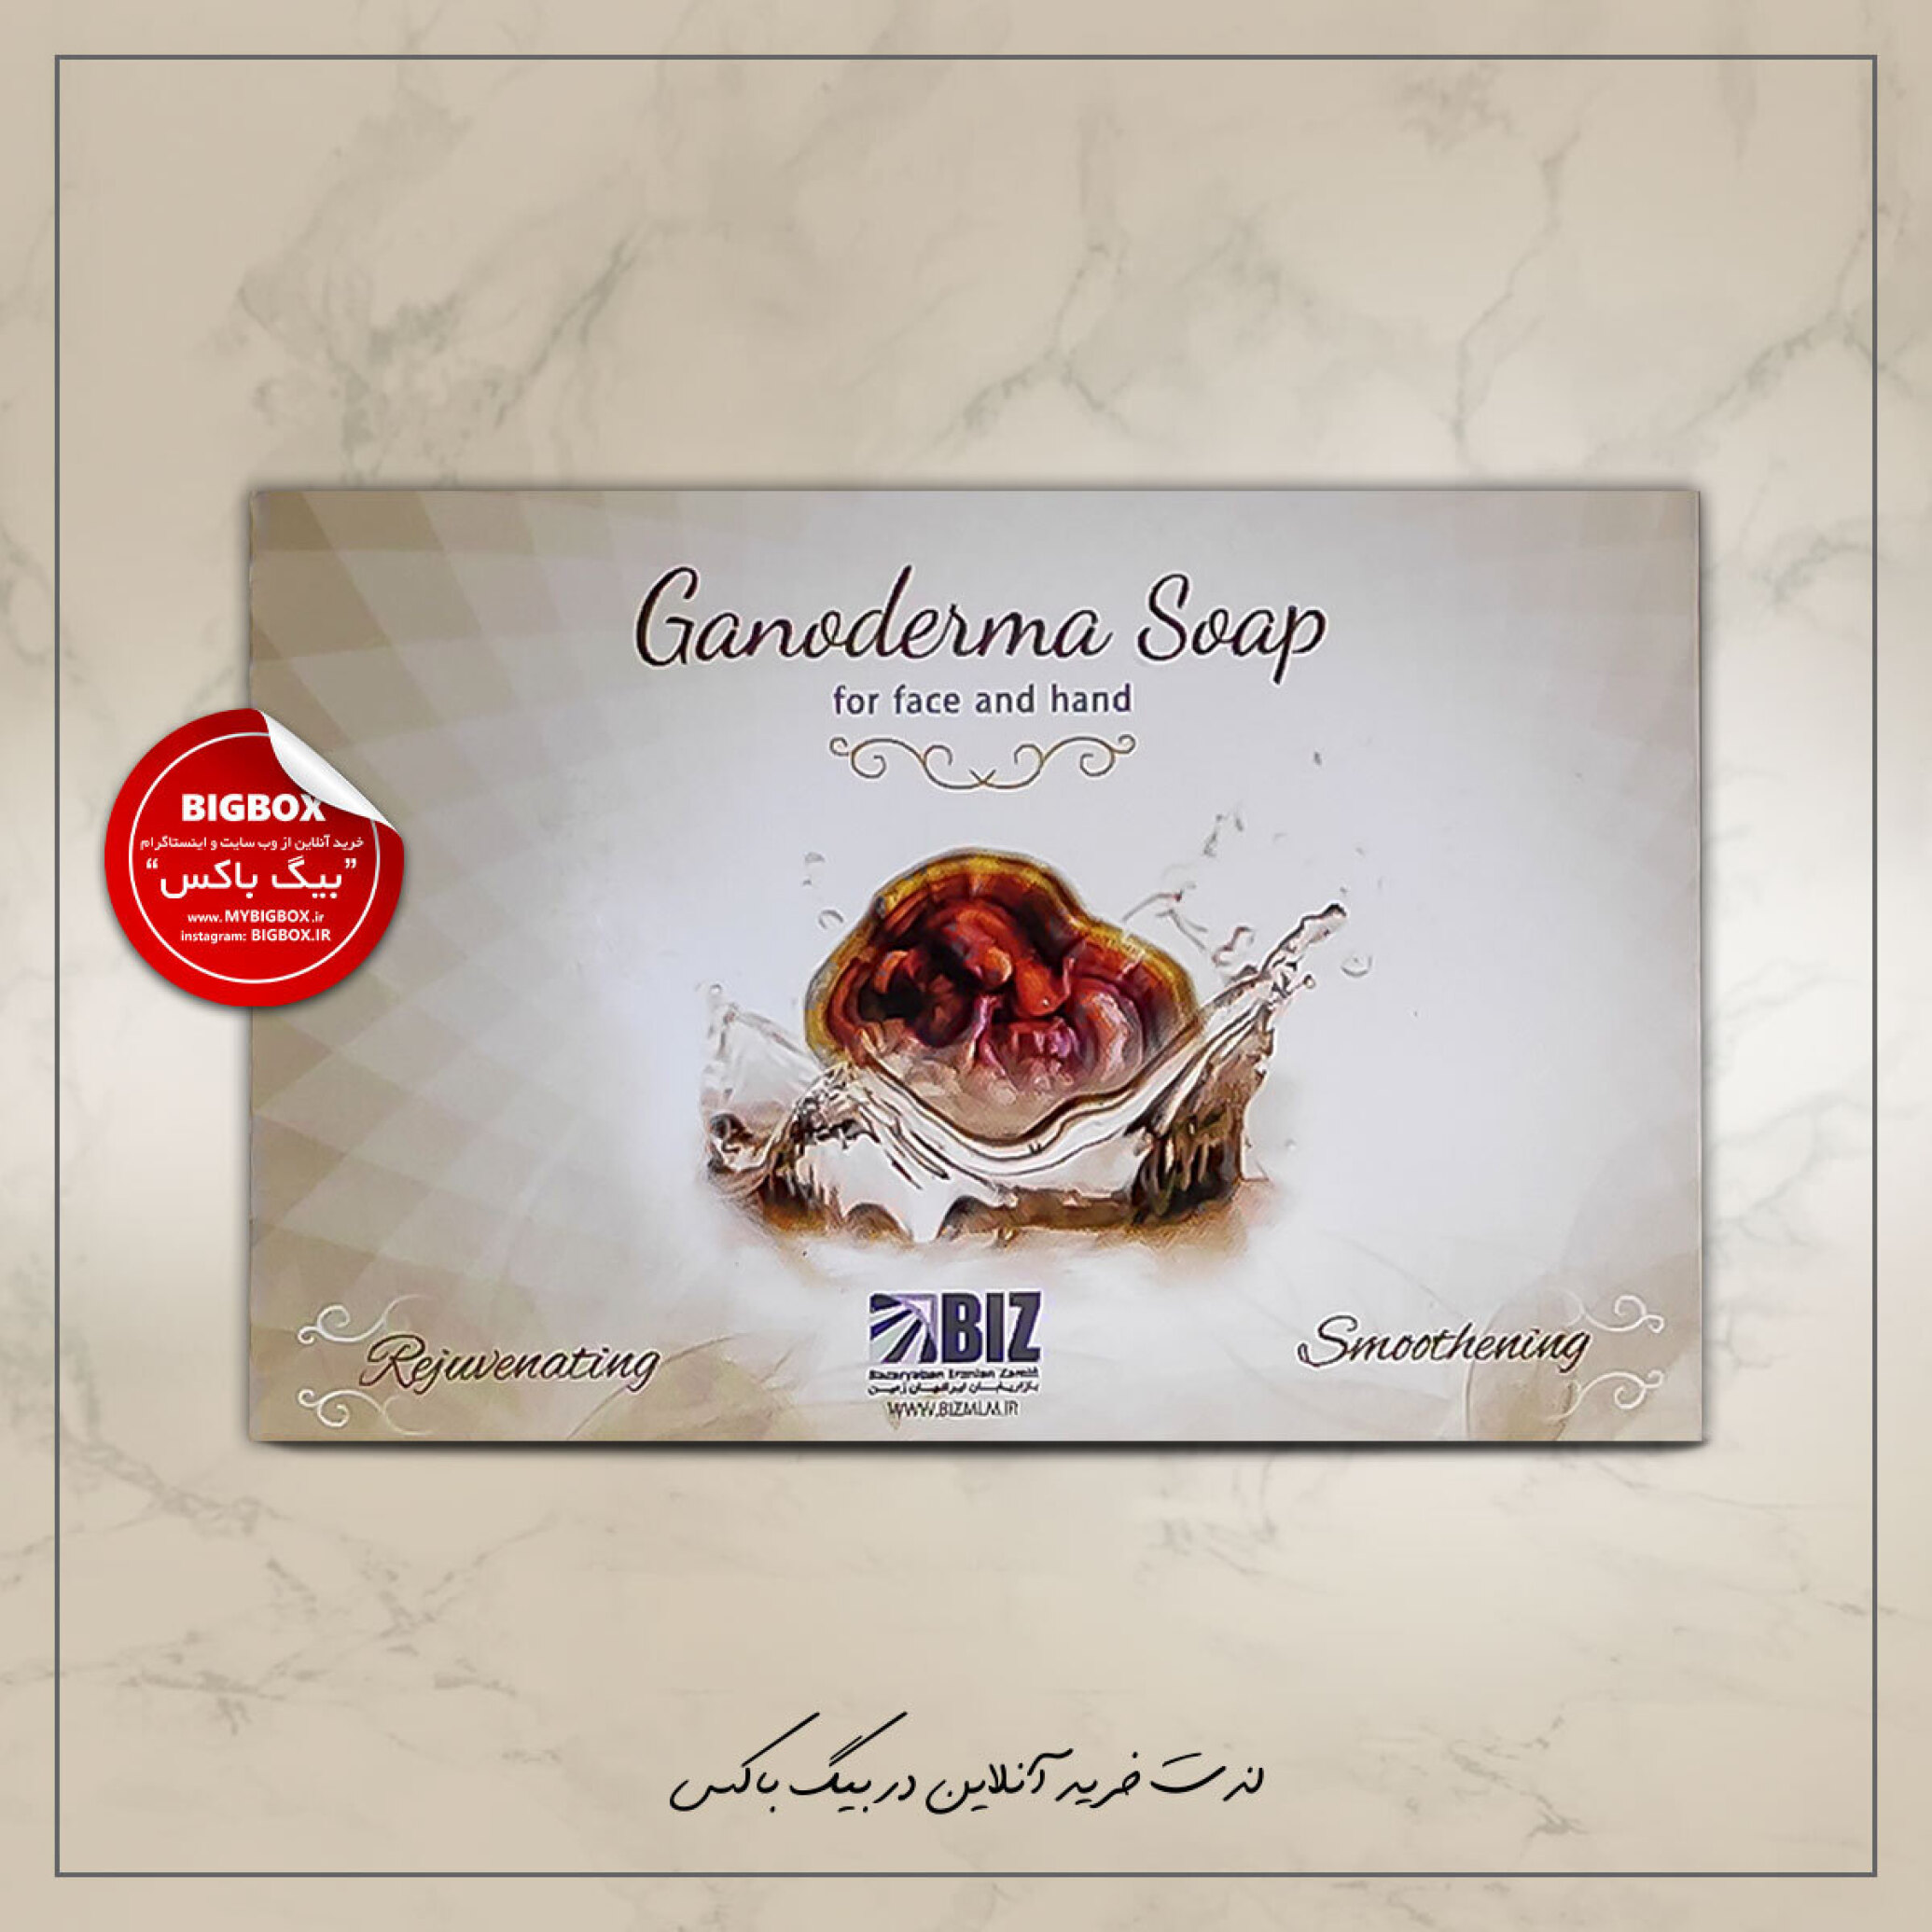  صابون دست و صورت بیز مدل قارچ گانودرما Biz Ganoderma Soap 